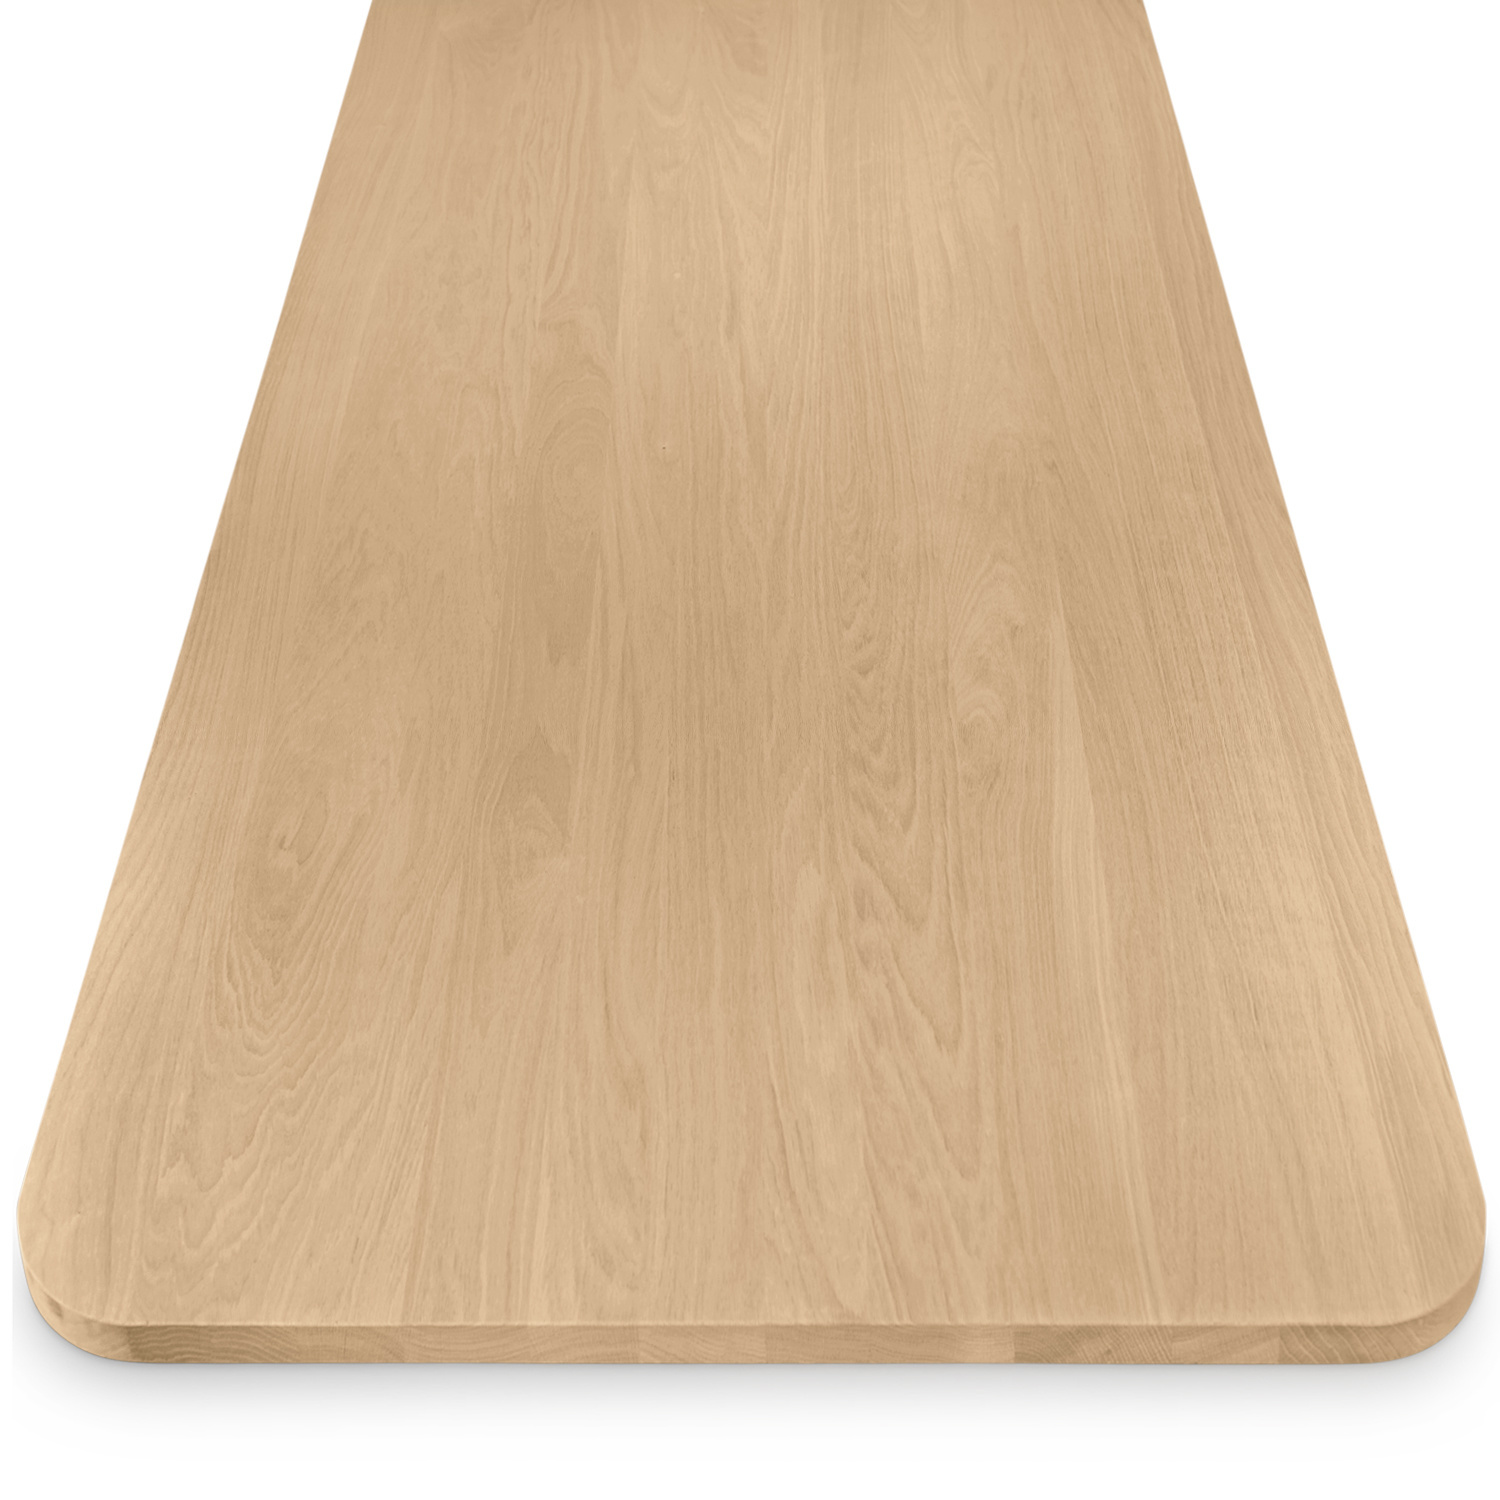  Eiken tafelblad met ronde hoeken - 2,7 cm dik (1-laag) - Diverse afmetingen - foutvrij Europees eikenhout - met brede lamellen (circa 10-12 cm) - verlijmd kd 8-12%